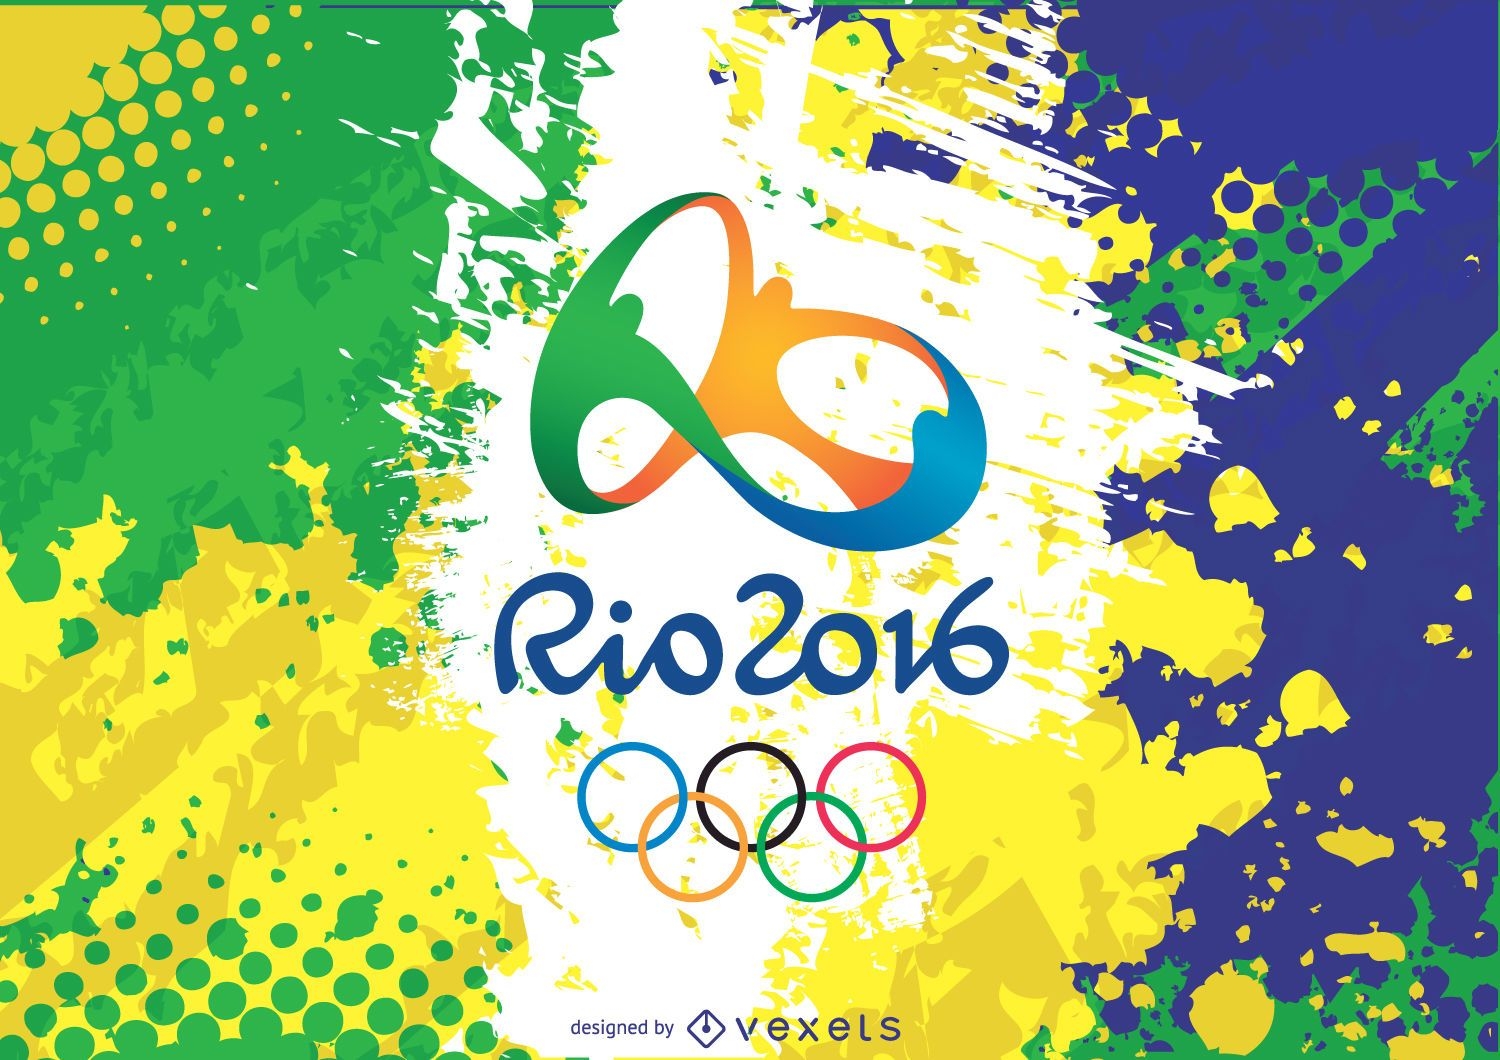 Logotipo e plano de fundo do Rio 2016